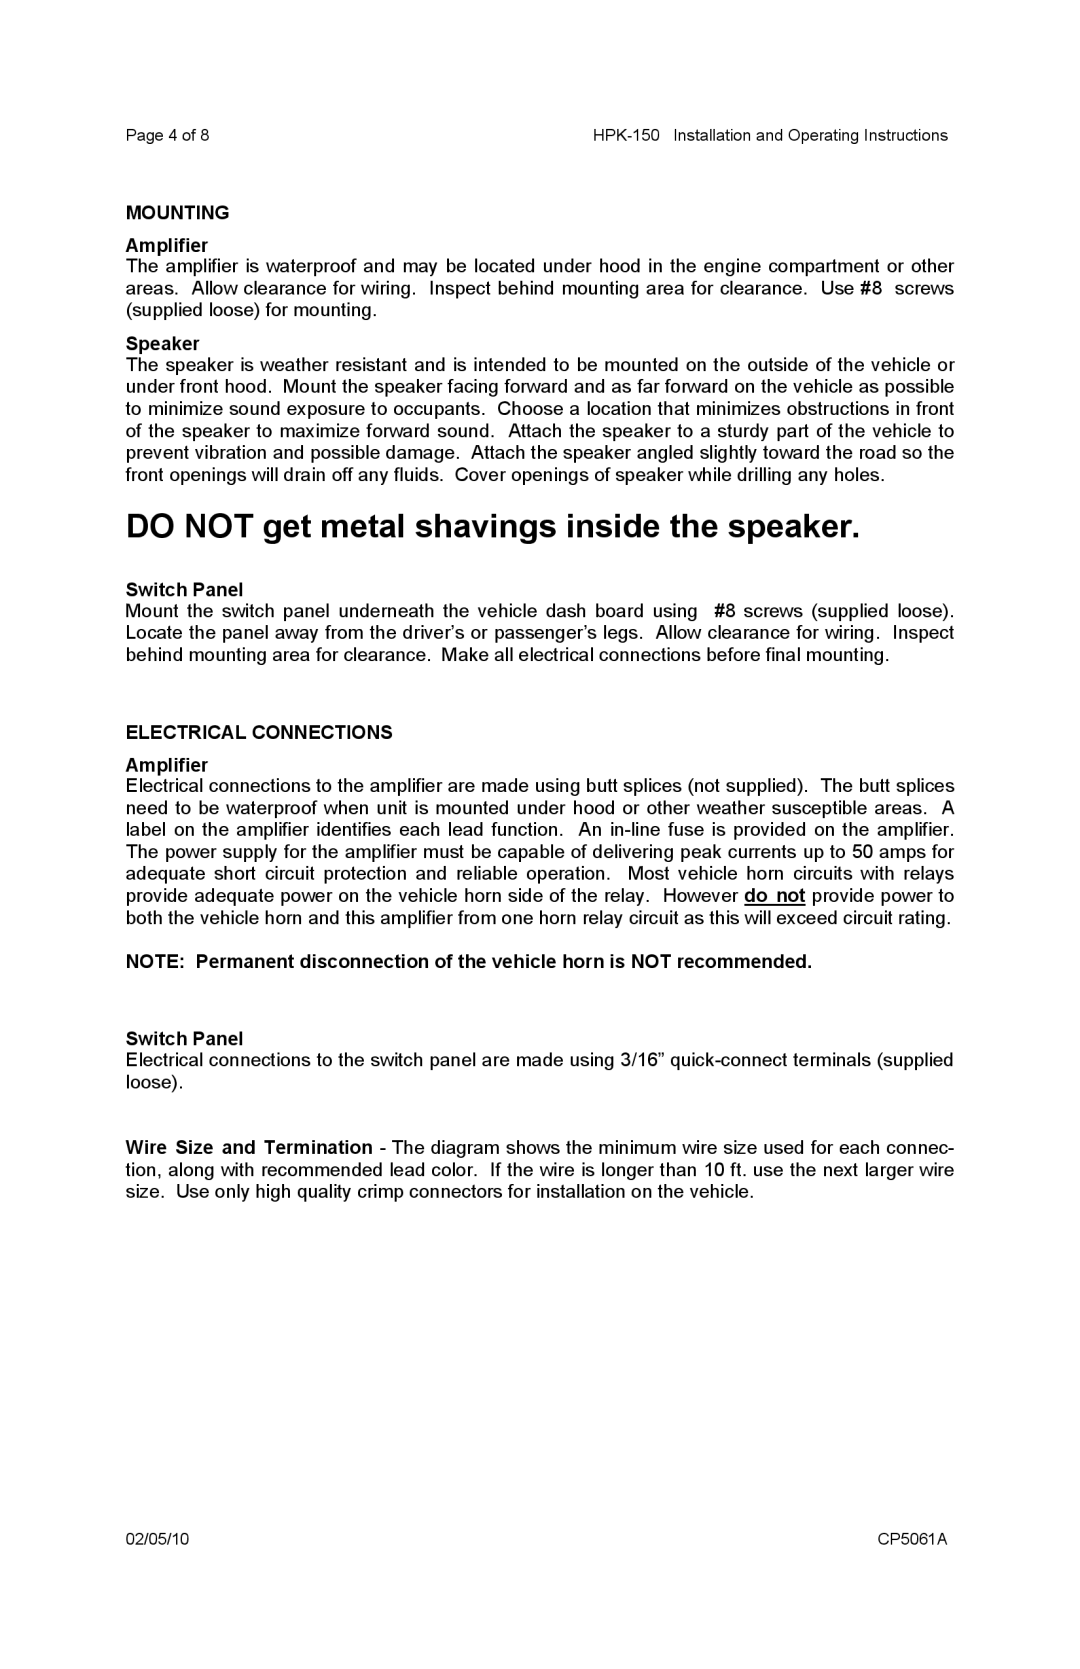 Carson Horn System DO NOT get metal shavings inside the speaker, MOUNTING Amplifier, Speaker, Switch Panel 